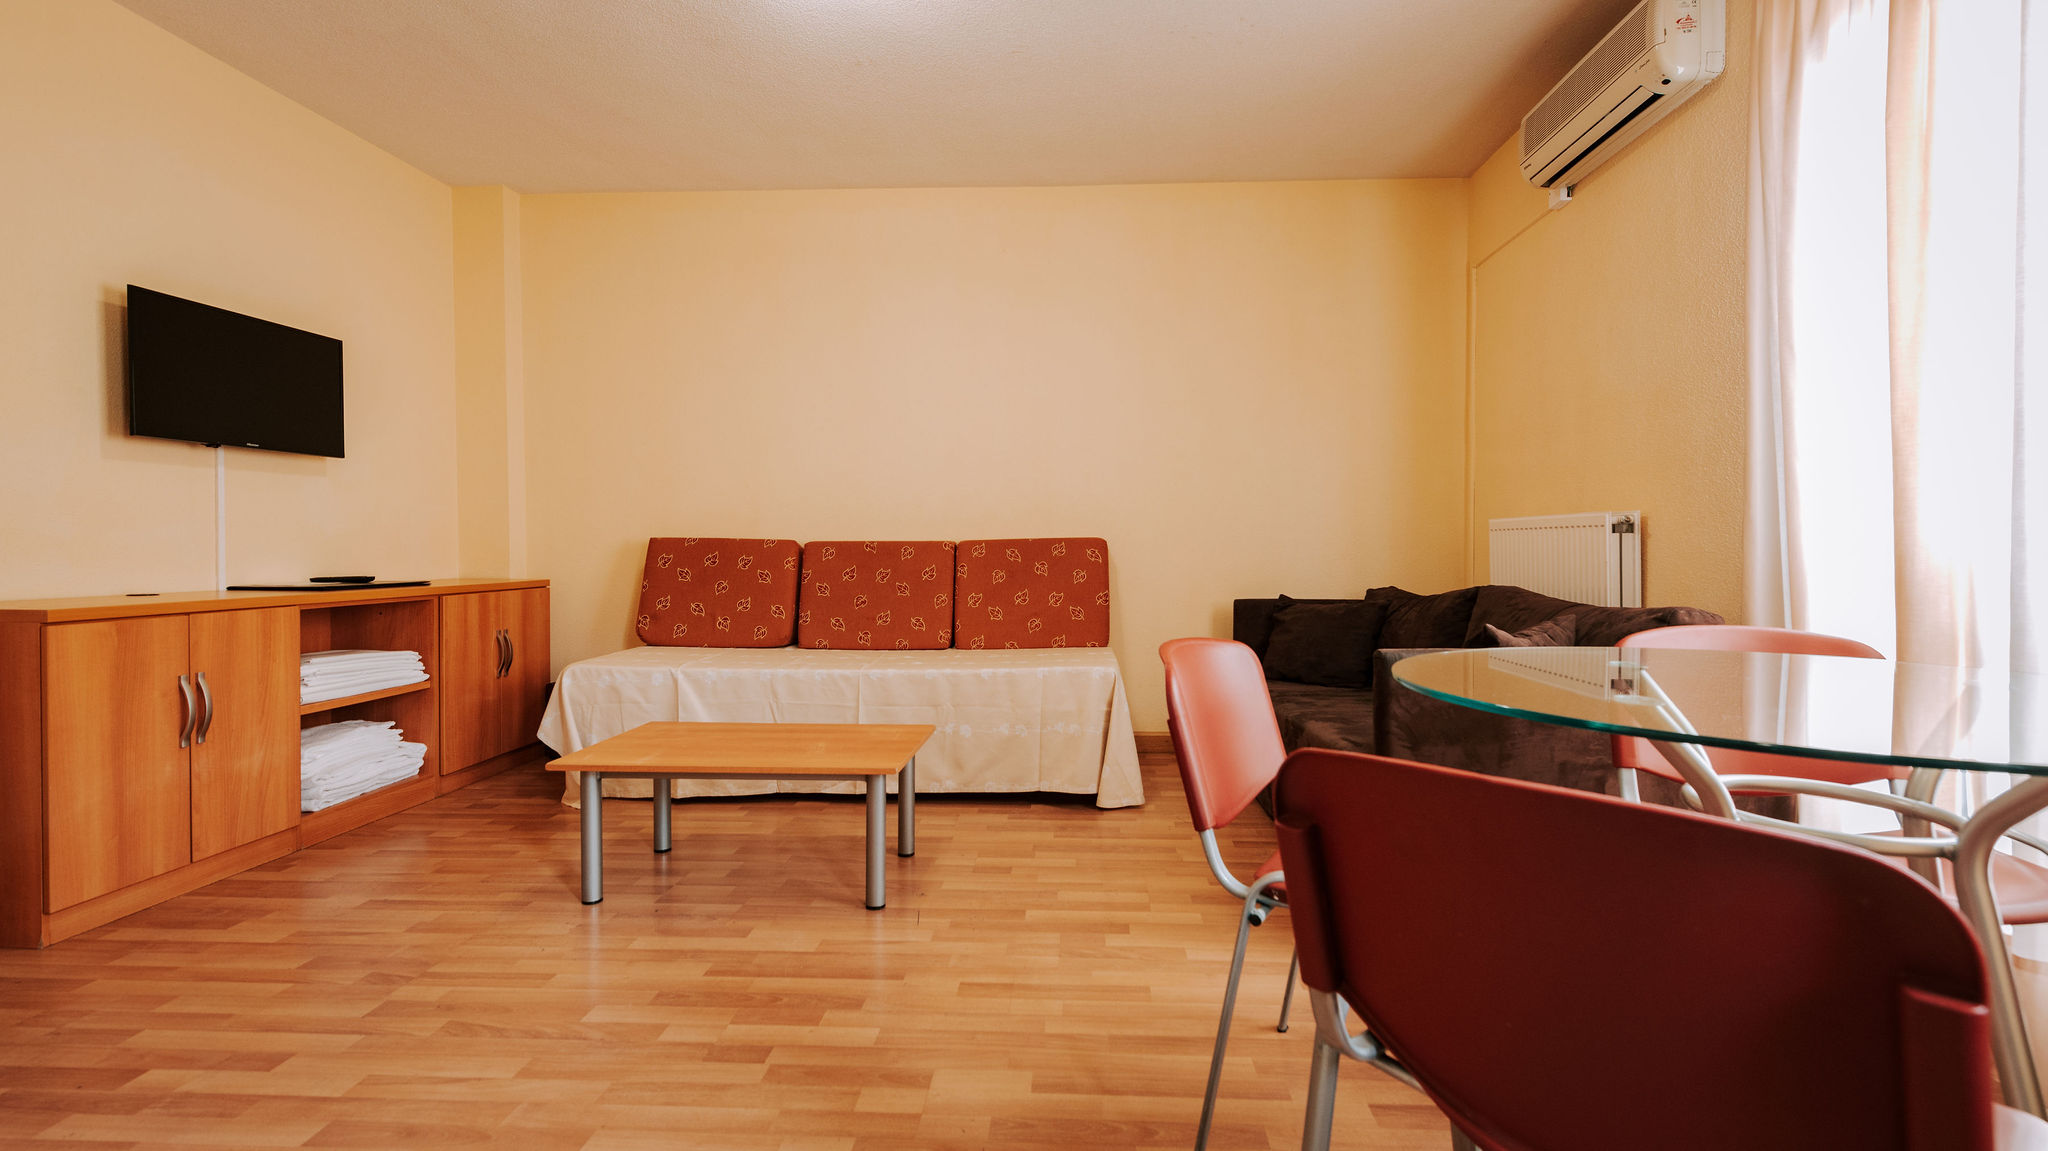 Salón comedor con dos sofás cama, apartamento de 5 personas